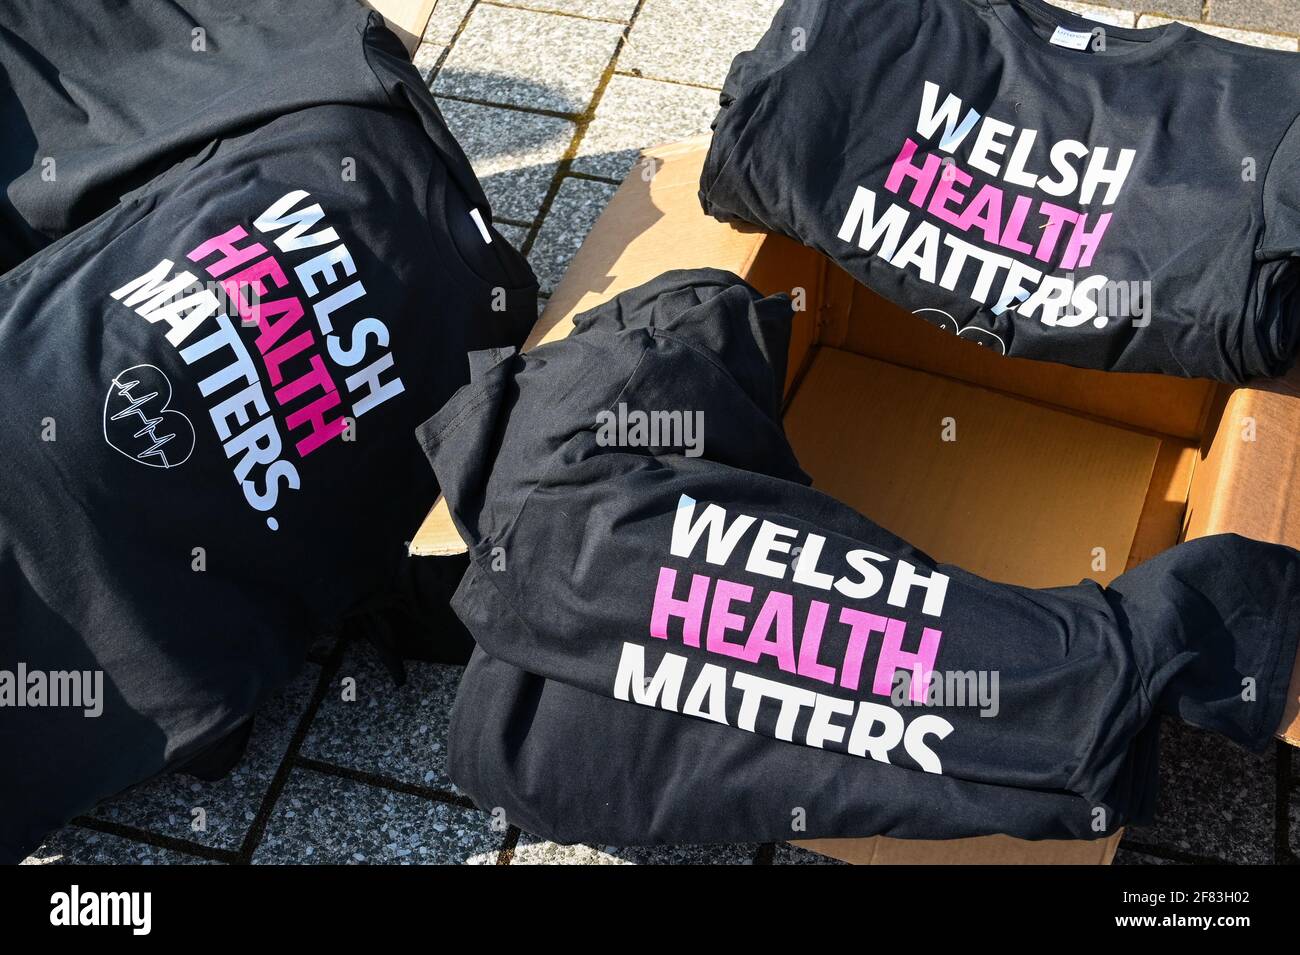 Cardiff, pays de Galles - avril 2021 : T-shirt imprimé avec un « Welsh Health Matters ». Des T-shirts ont été remis à des personnes protestant contre la fermeture d'un gymnase verrouillé Banque D'Images